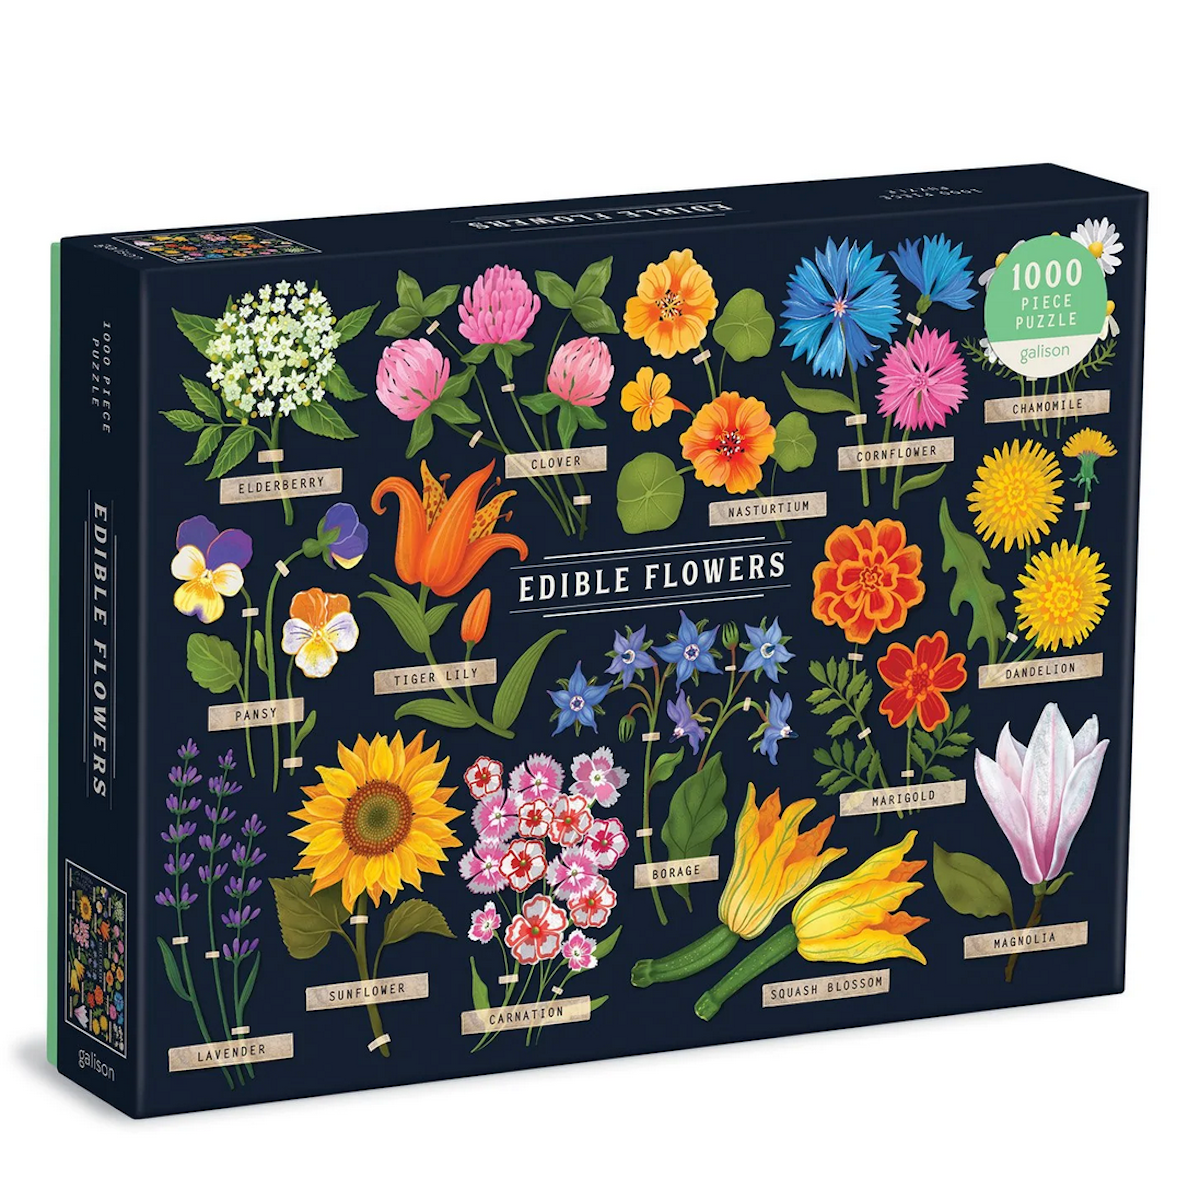 Edible Flowers Galison Puzzle 500pcs